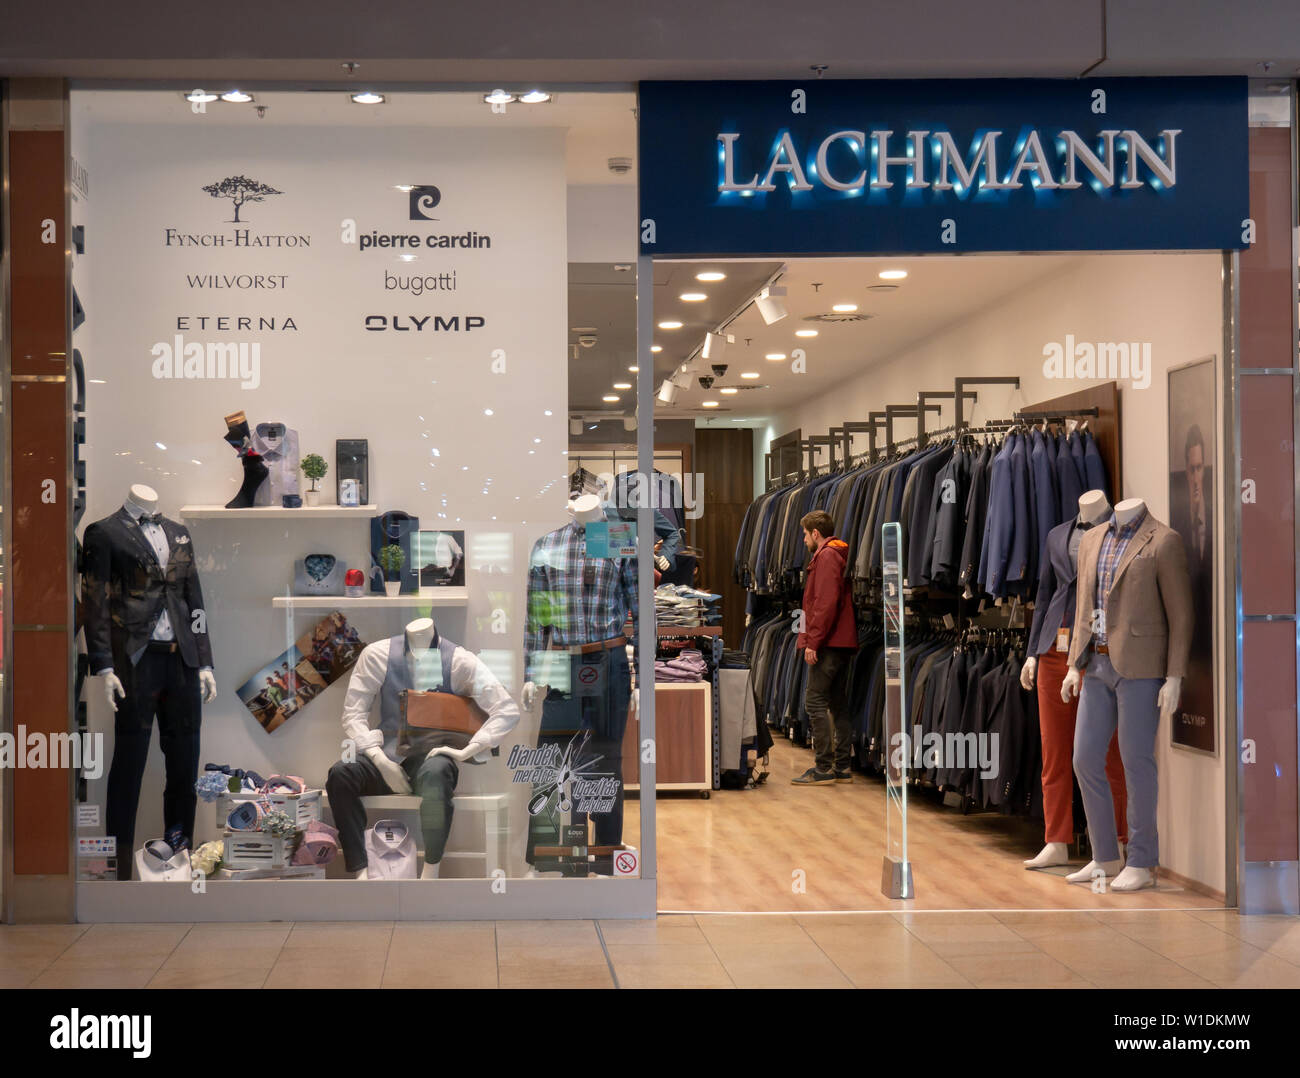 Gyor Hungría 05 07 2019 Un joven comprador buscando ropa en una tienda lachmann Foto de stock